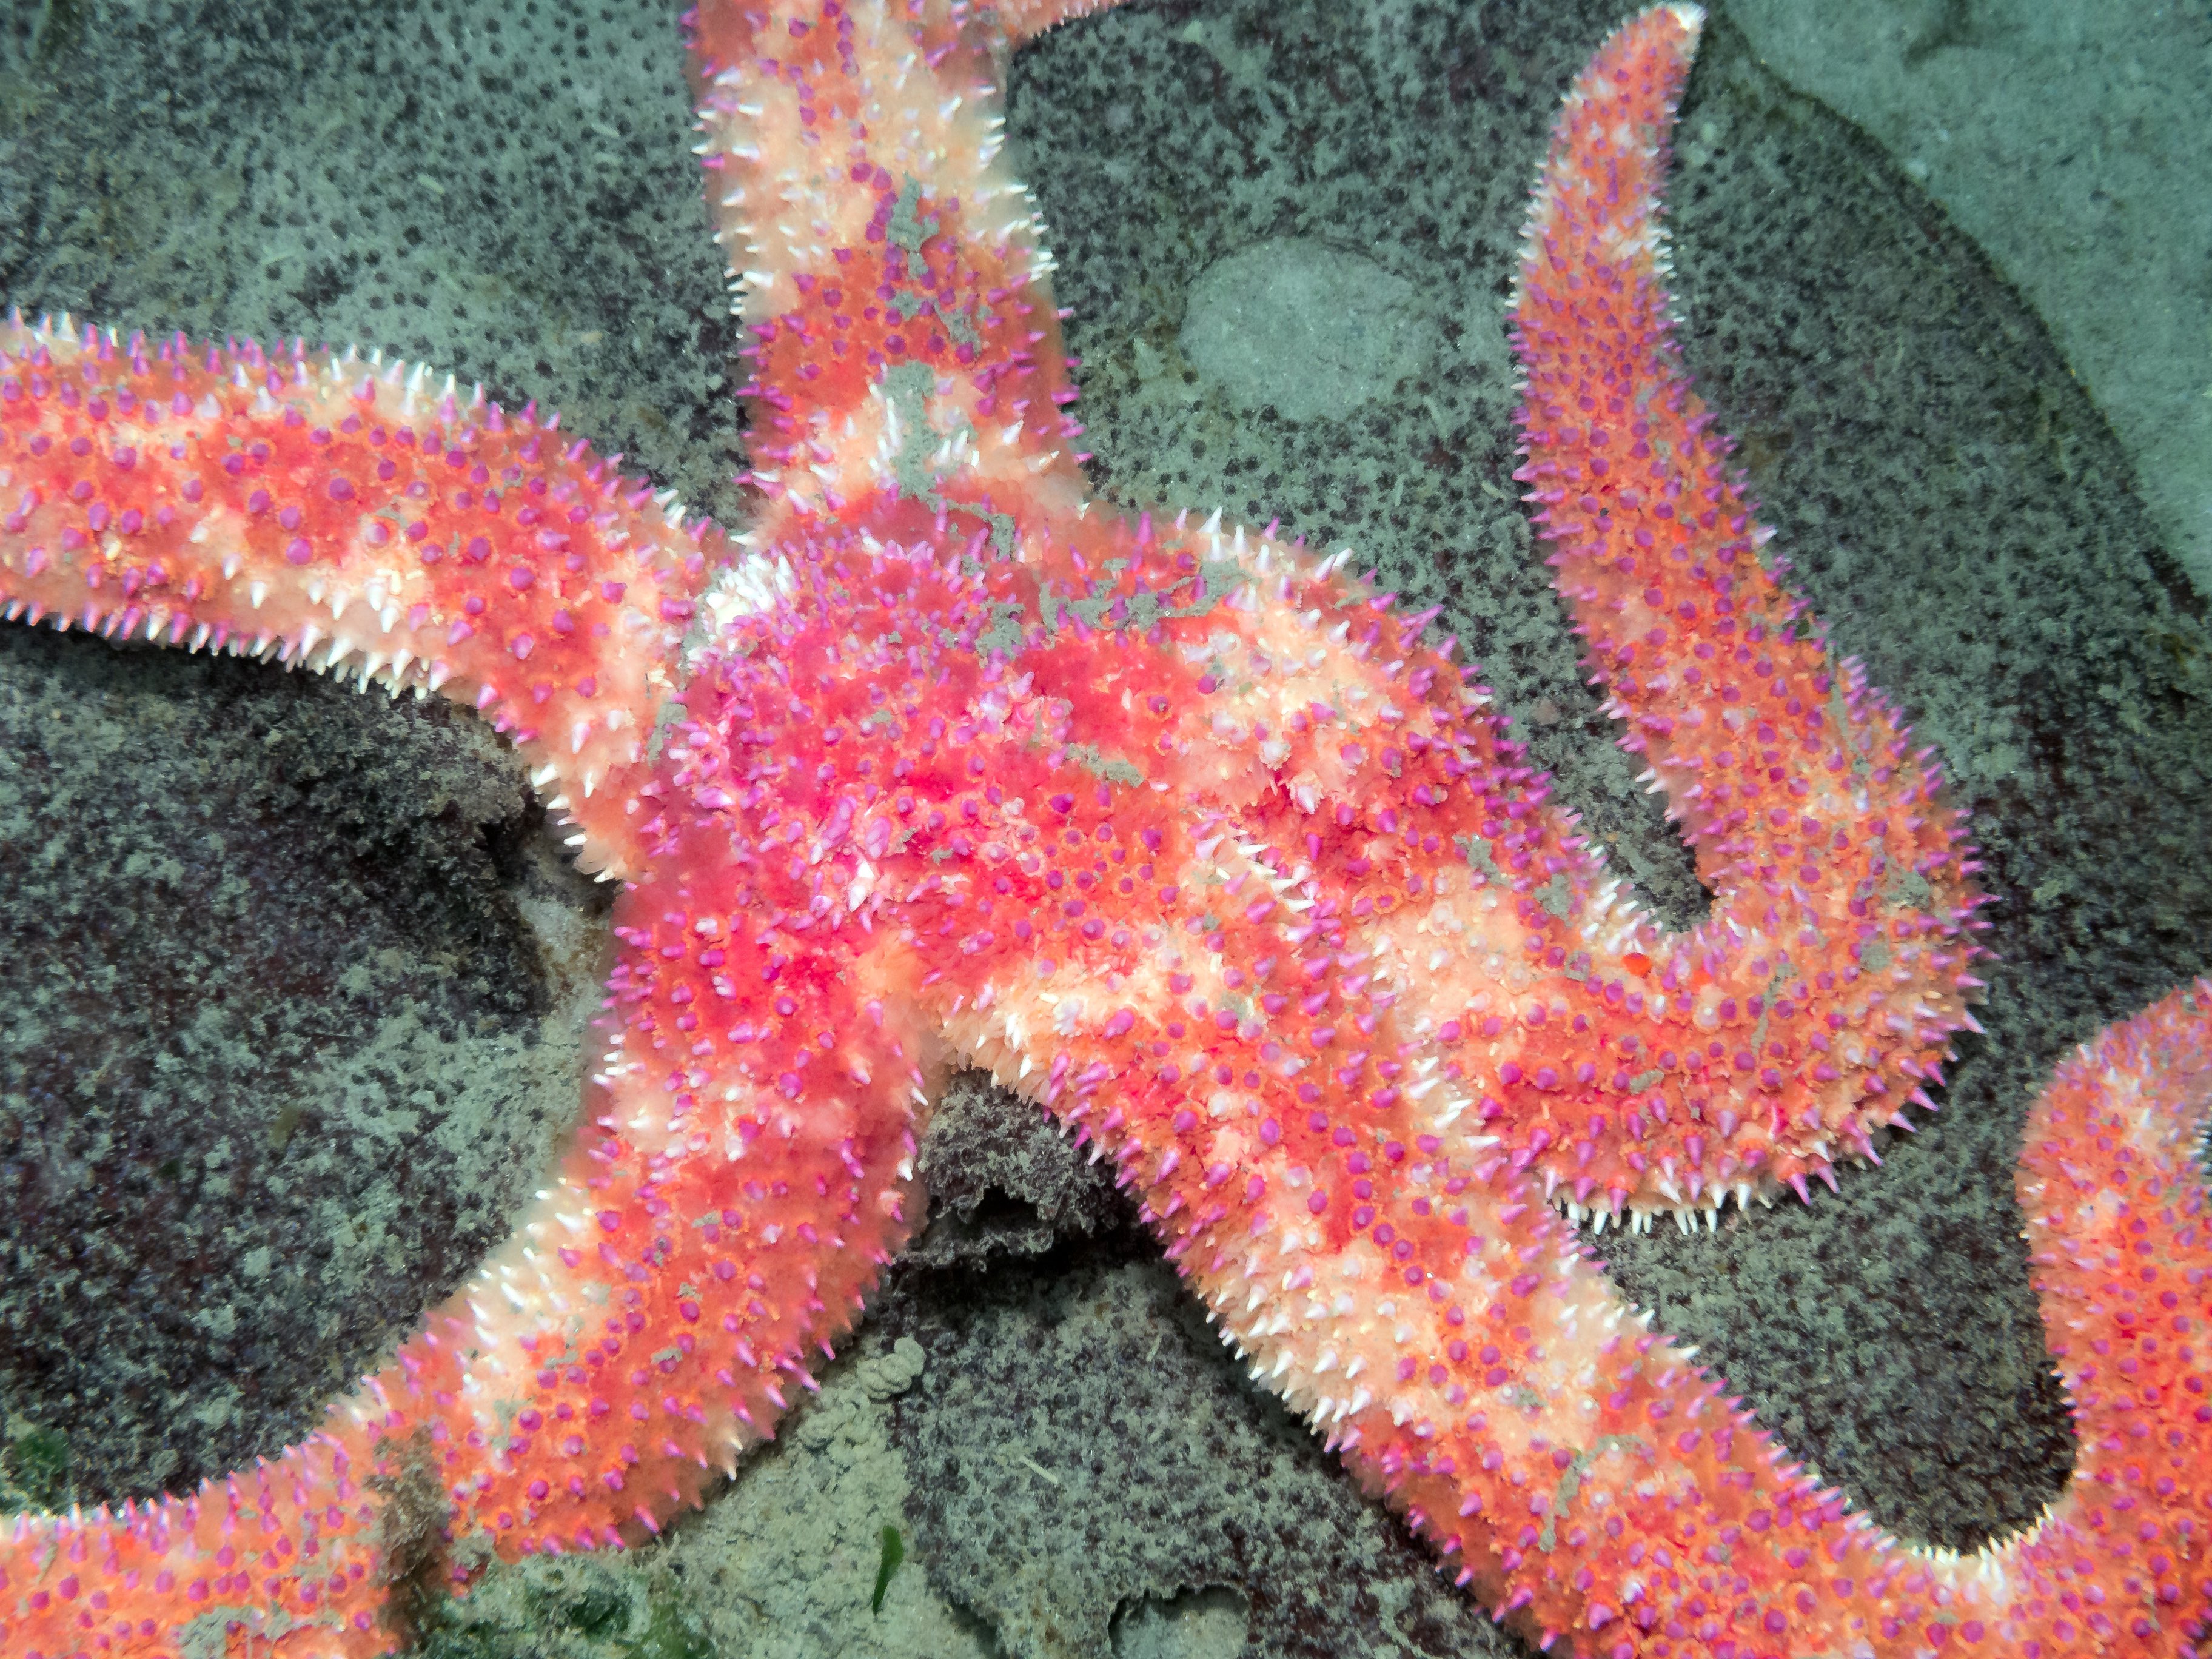 Orthasterias koehleri, rainbow sea star